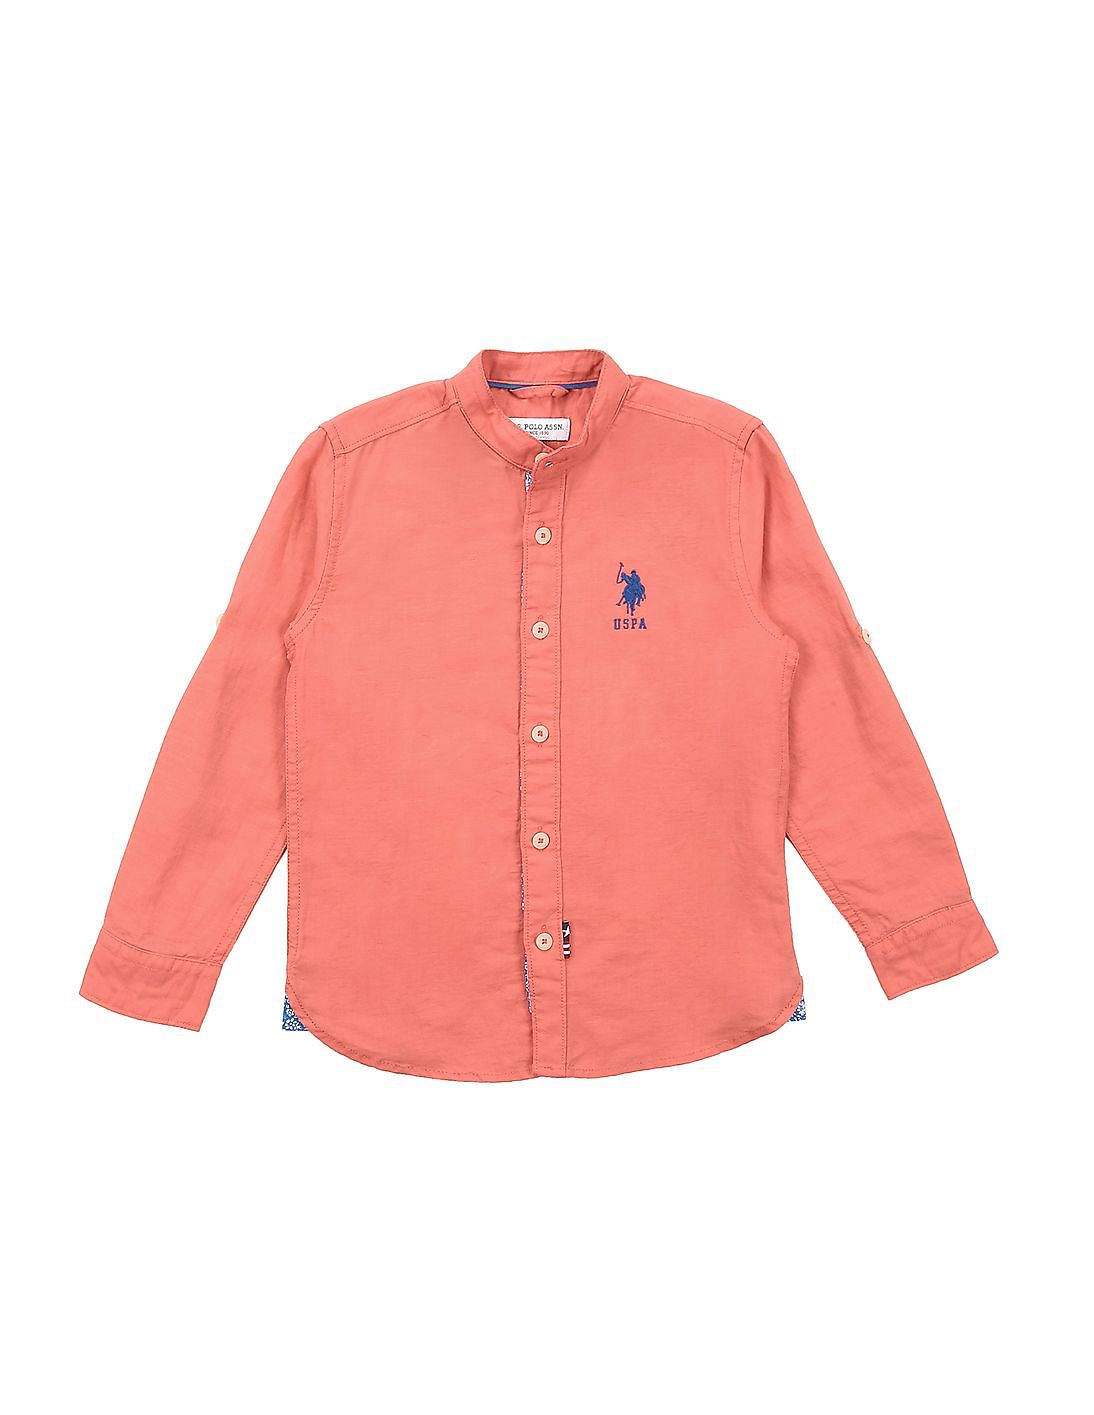 Buy U.S. Polo Assn. Kids Boys Boys Mandarin Collar Cotton Linen Shirt ...